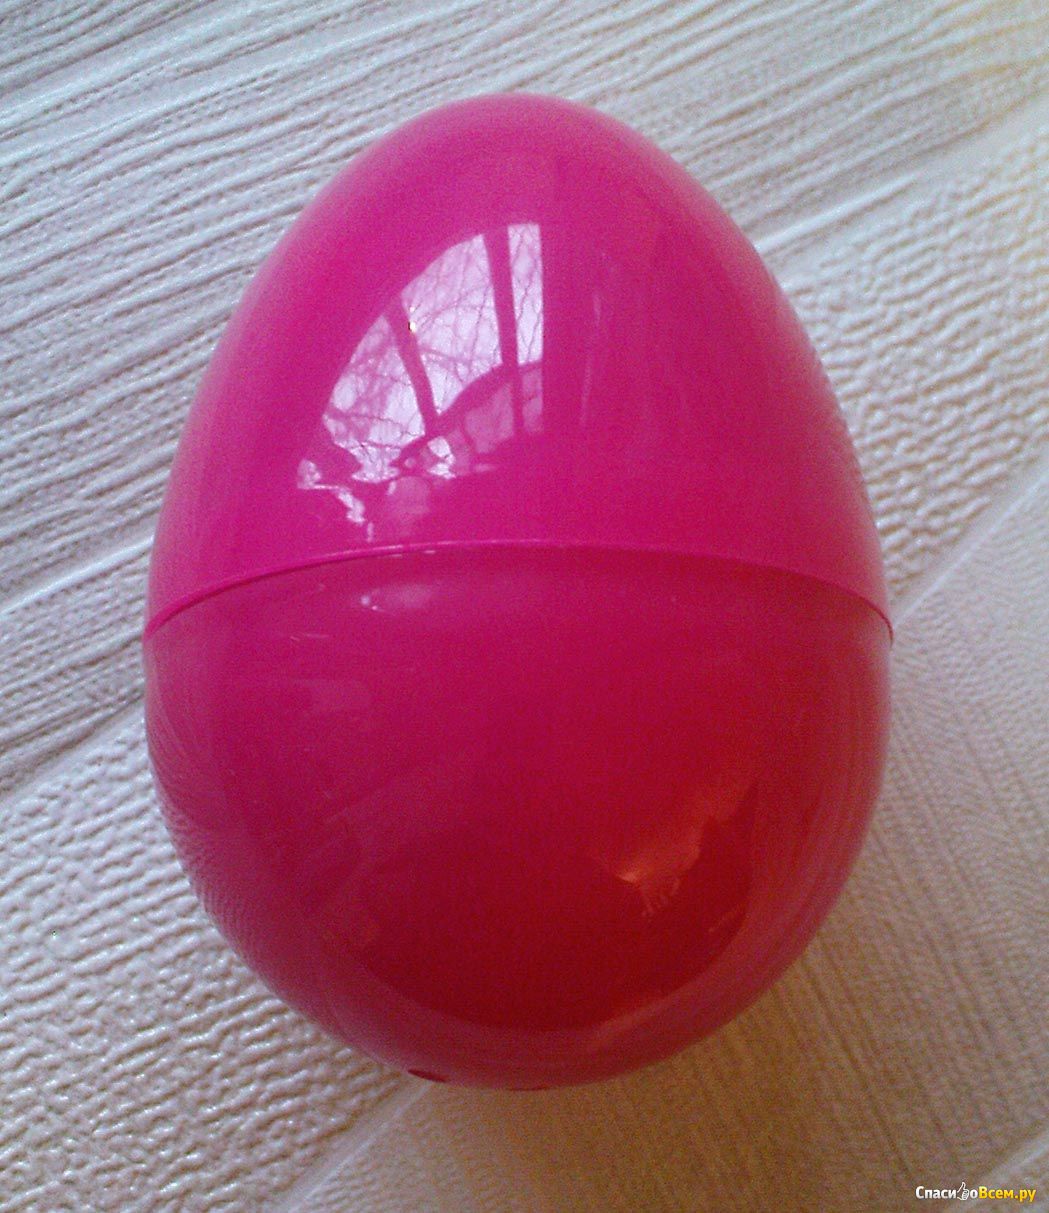 Пластиковые яйца купить. Пластиковое яйцо Маша и медведь. Пластмассовые яйца Маша и медведь. Розовые детские пластиковые яйца. Красные пластиковые яйца.